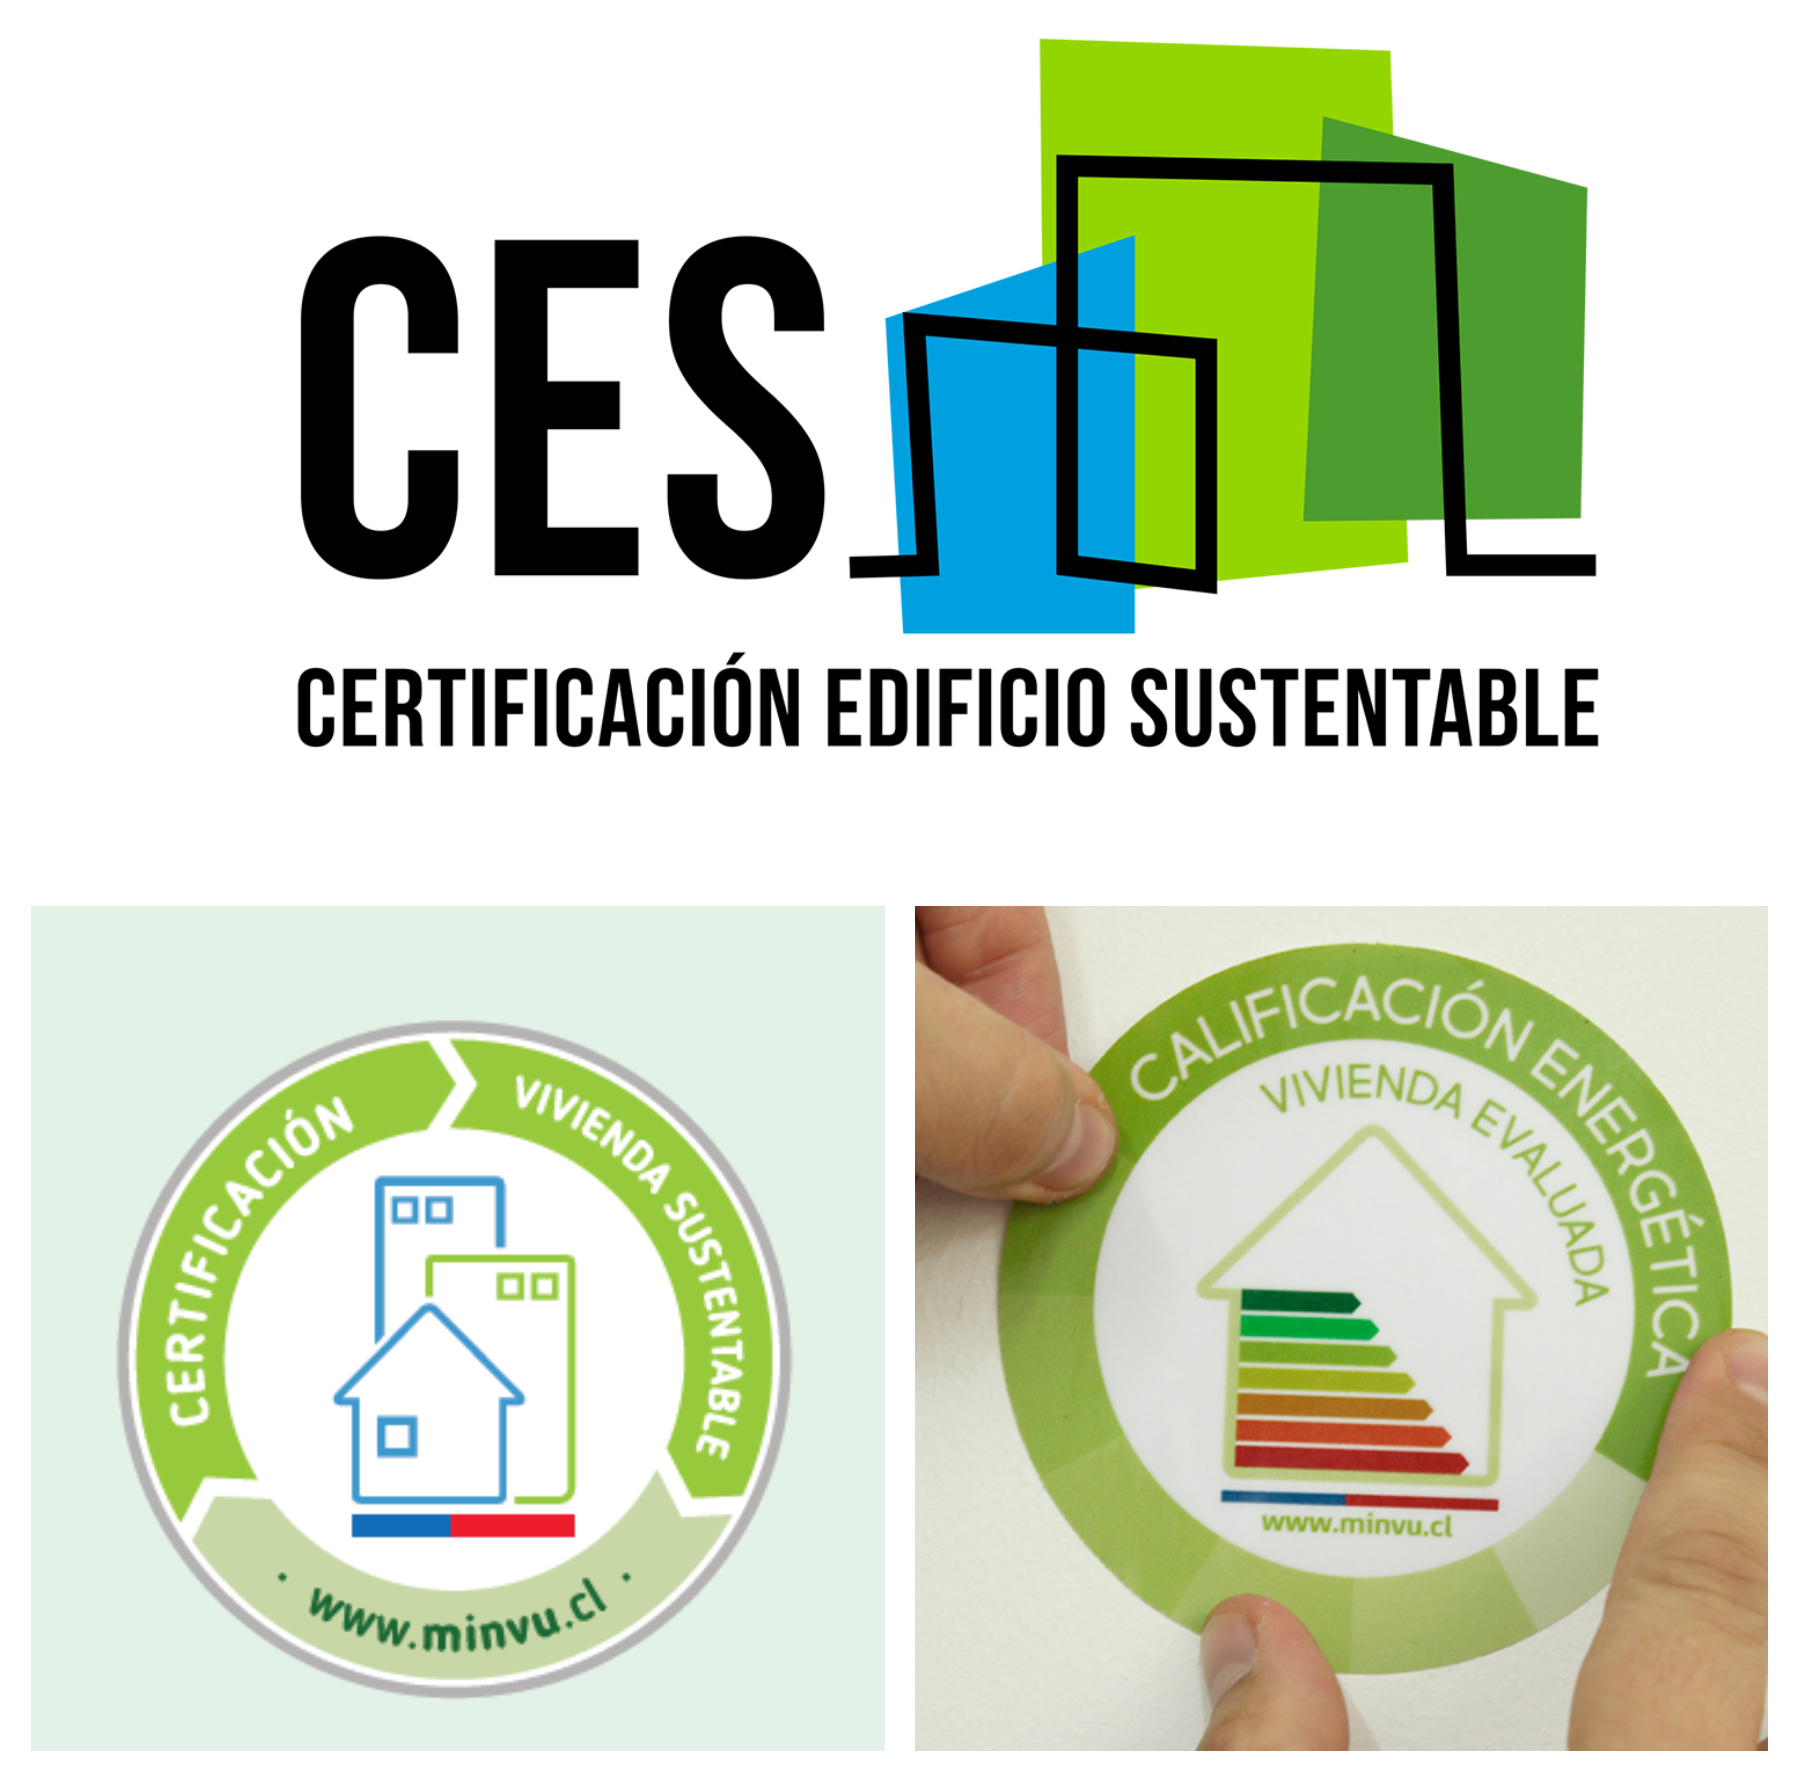 La evolución de la edificación certificada en Chile